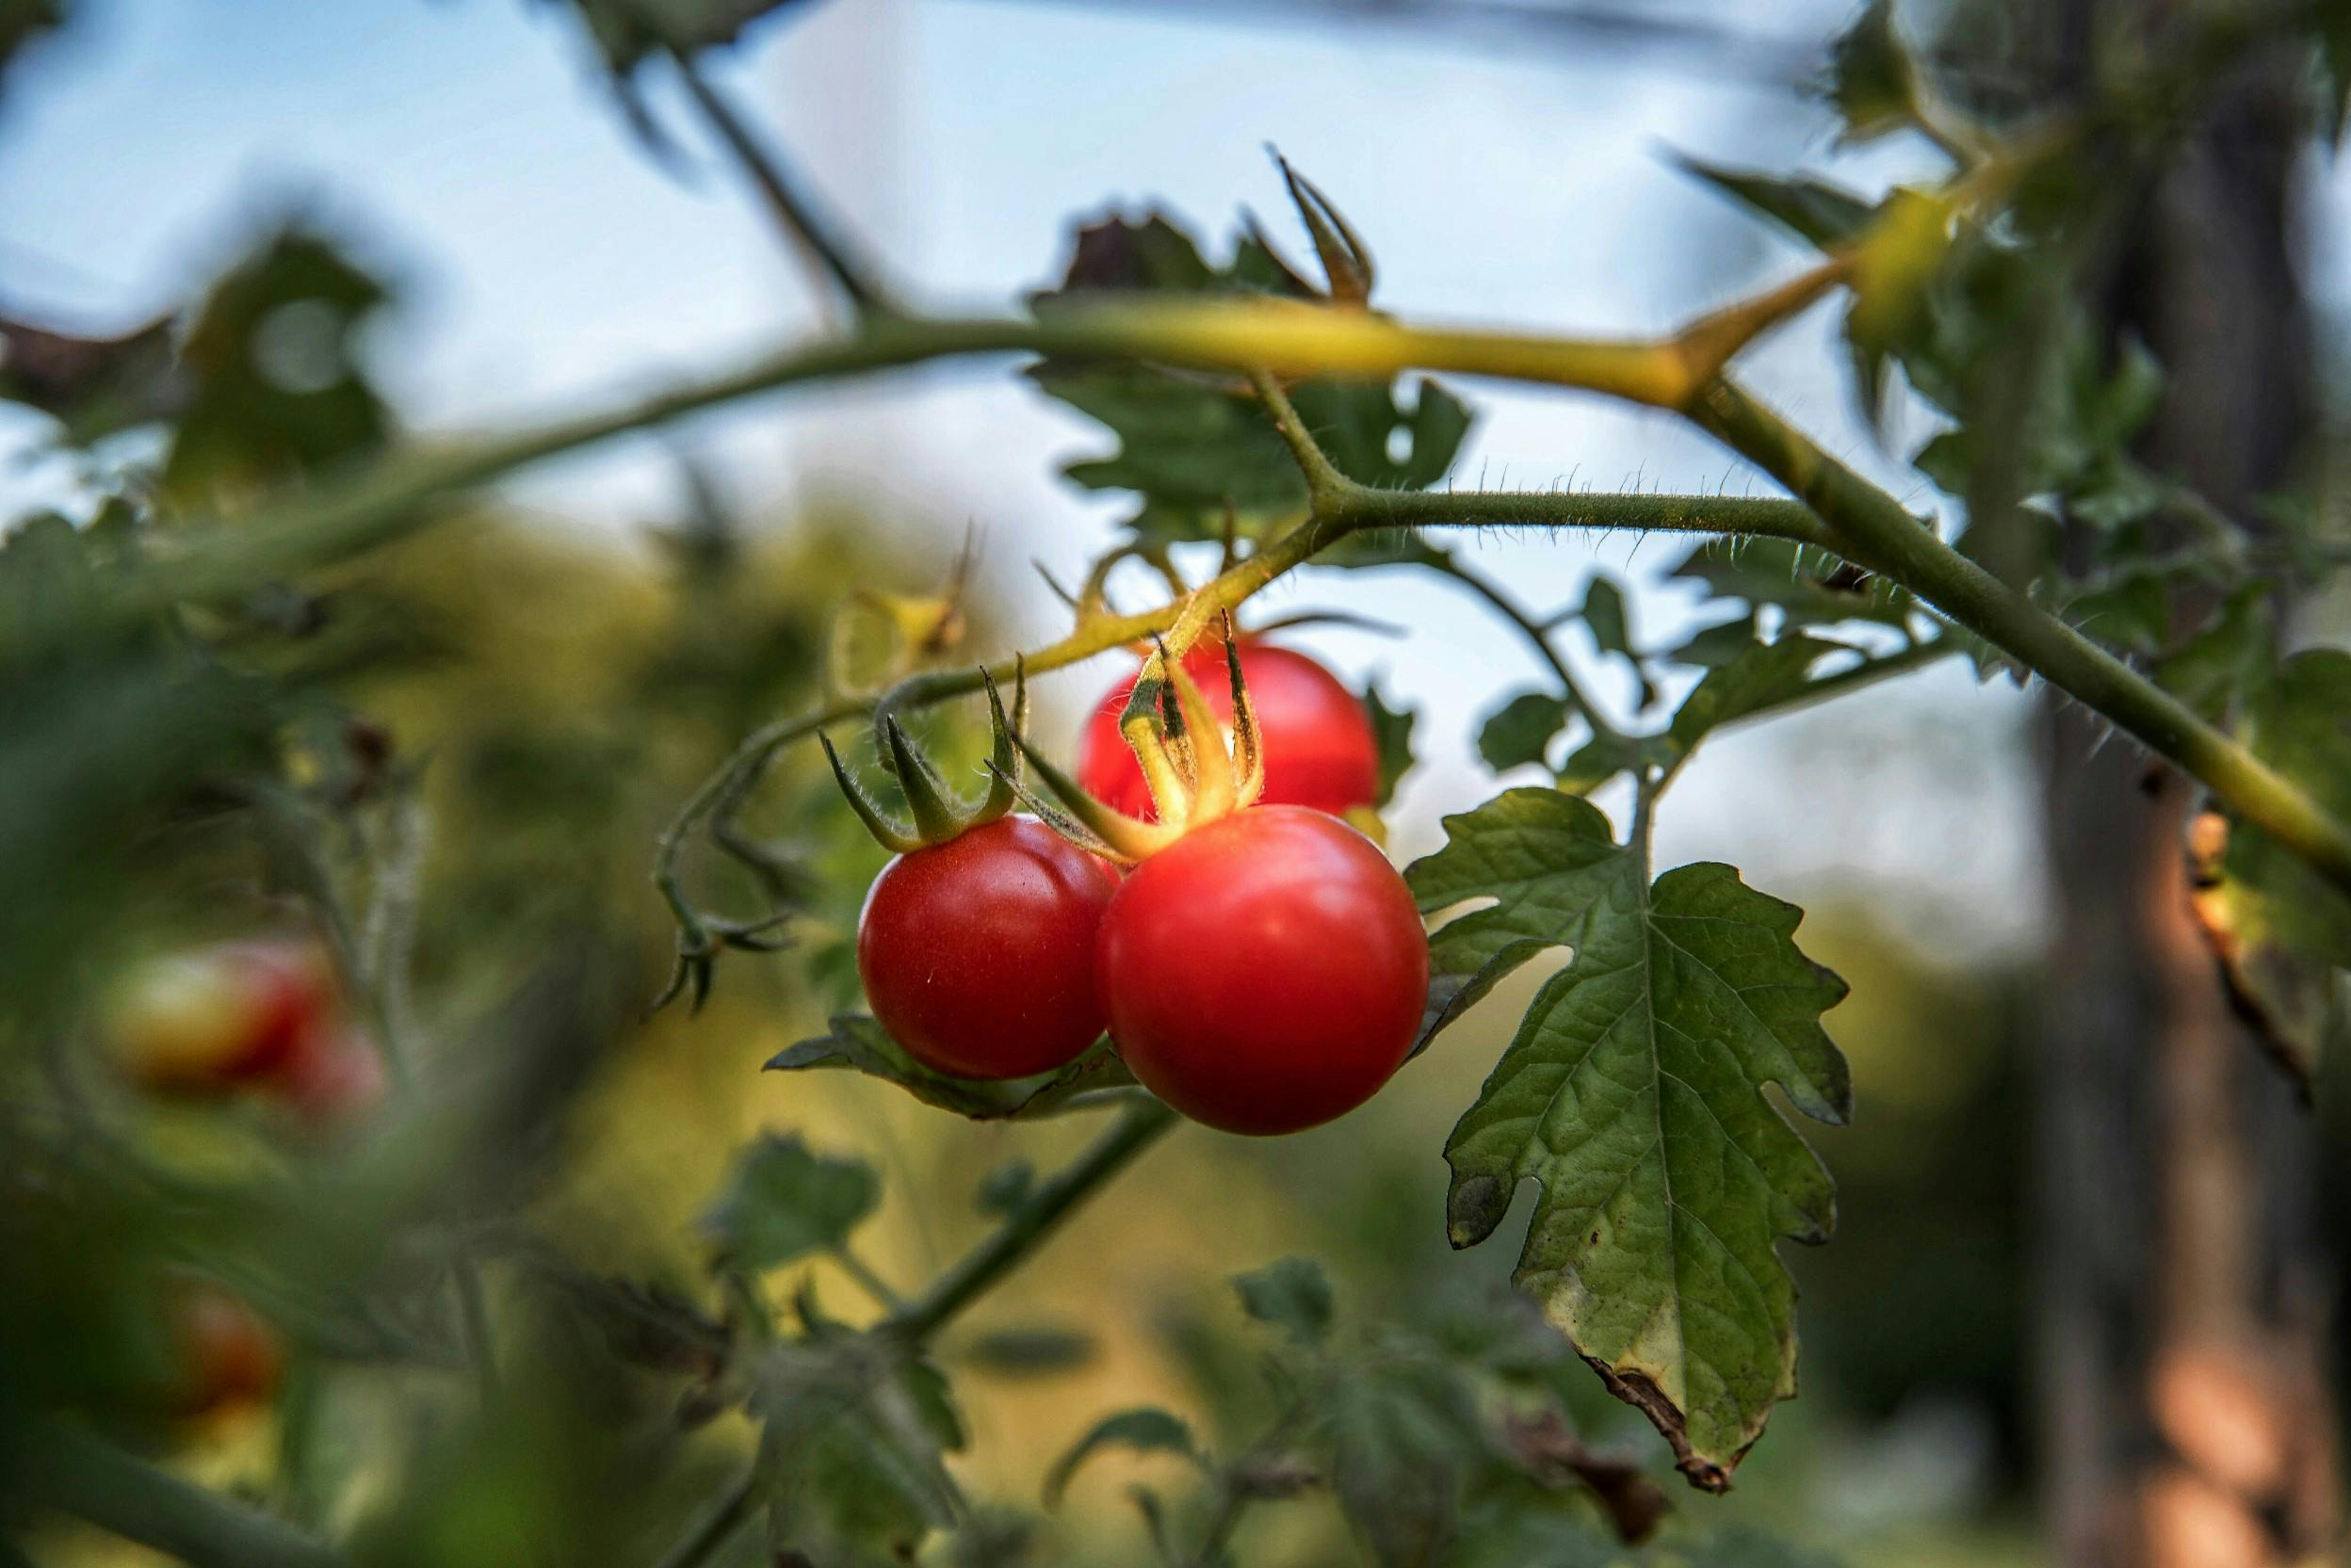 Tomaten im Hochbeet anlegen einfach erklärt: So erhältst du schöne, schmackhafte Tomaten in deinem Garten und auf dem Balkon